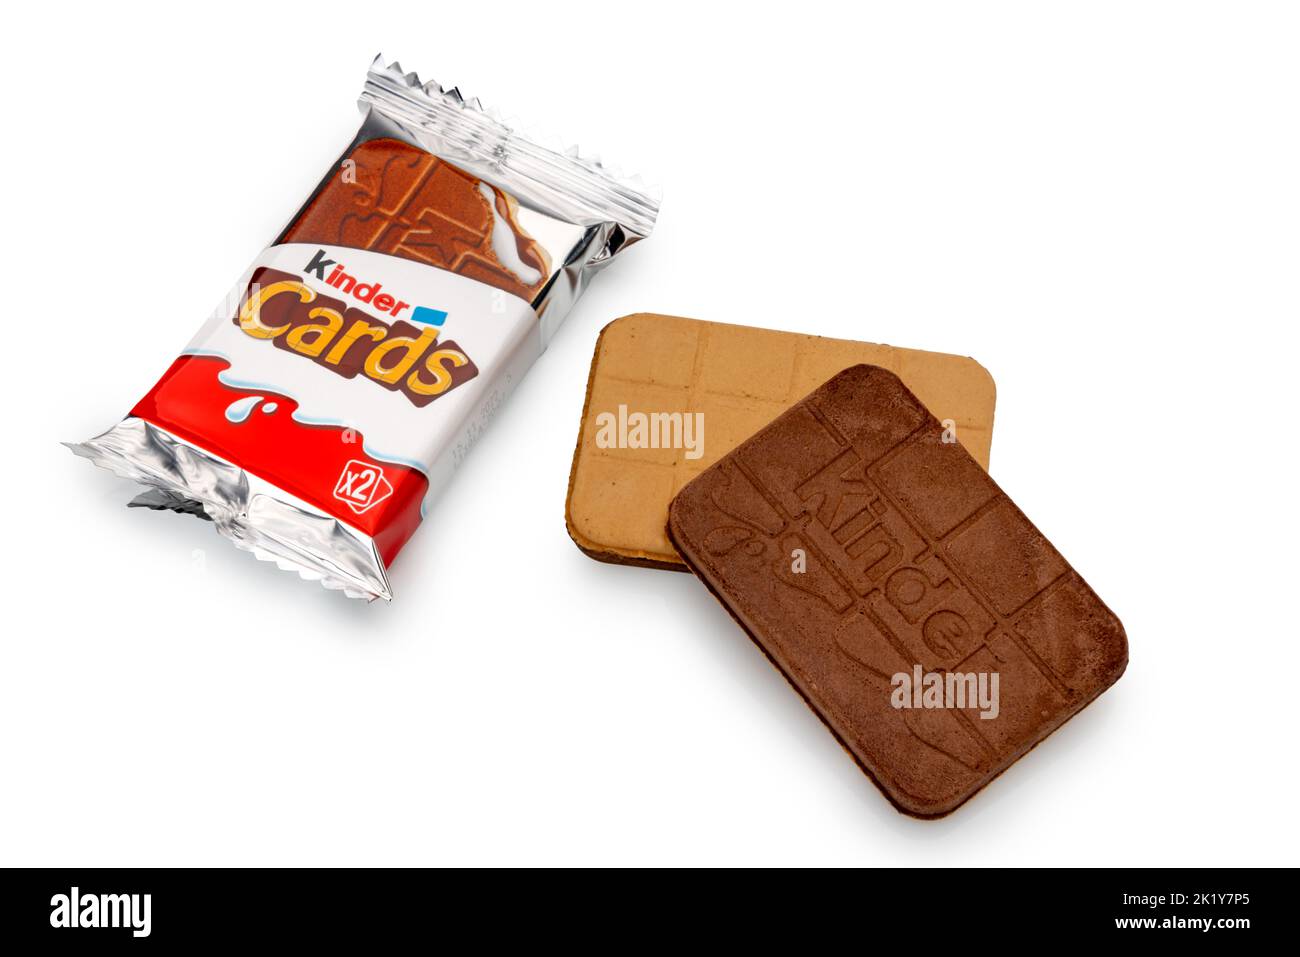 Alba, Italia - 19 settembre 2022: Kinder Cards: Biscotti salati sottili ripieni di cioccolato al latte prodotto da Ferrero. Confezione con coo anteriore e posteriore Foto Stock